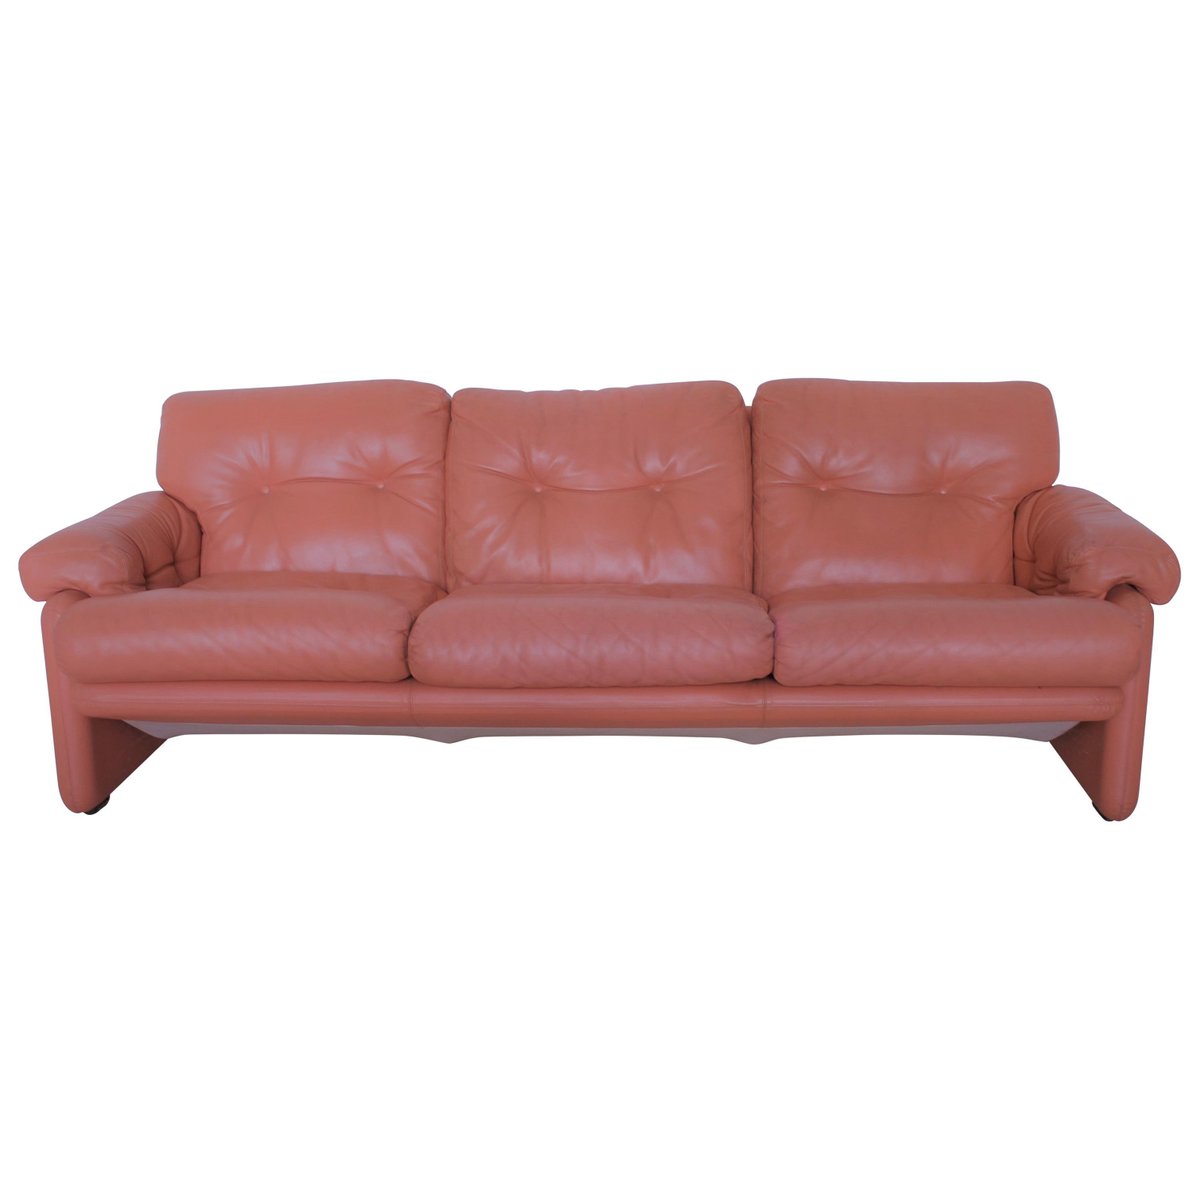 coronado salmon pink leather three seater sofa by tobia scarpa PLQ-1004301